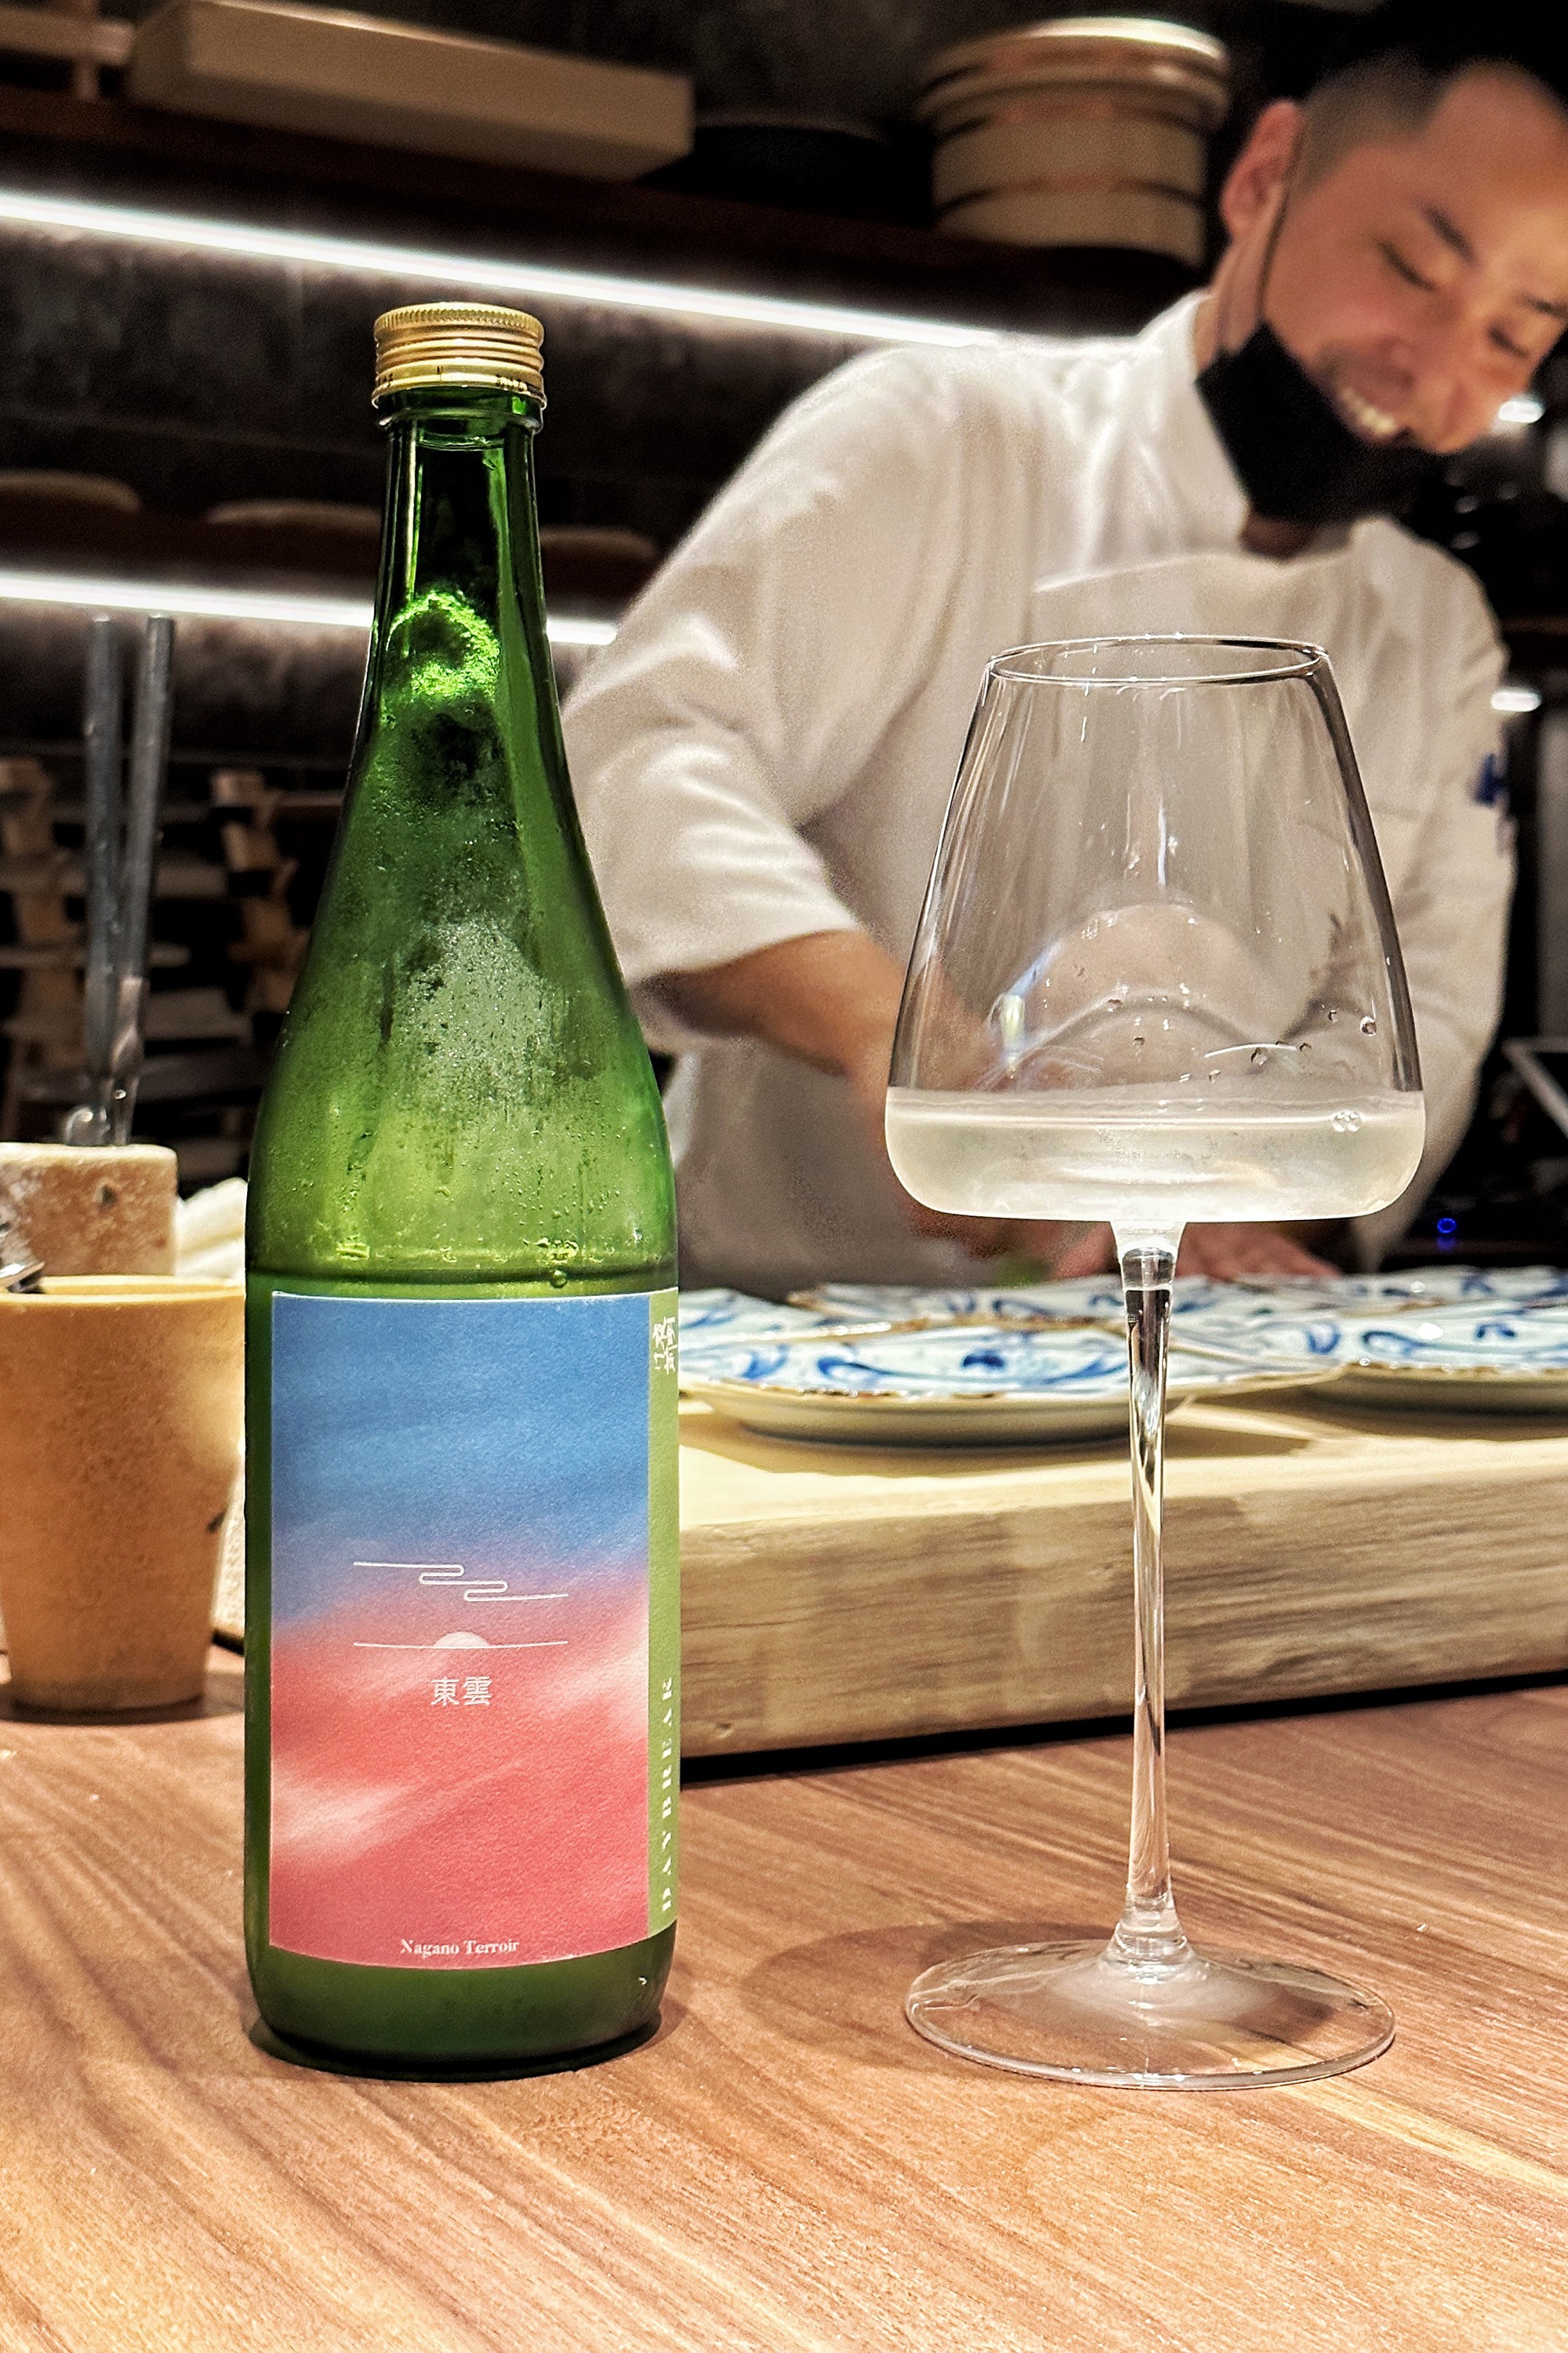 來自兵庫縣小野酒造的「夜明け前 Daybreak 東雲 Shinonome」是一款低酒精、輕盈的酒，但仍是可感受到來自在地產山惠錦旨味的美味酒款。（1,500元／人，只能搭配無菜單料理）